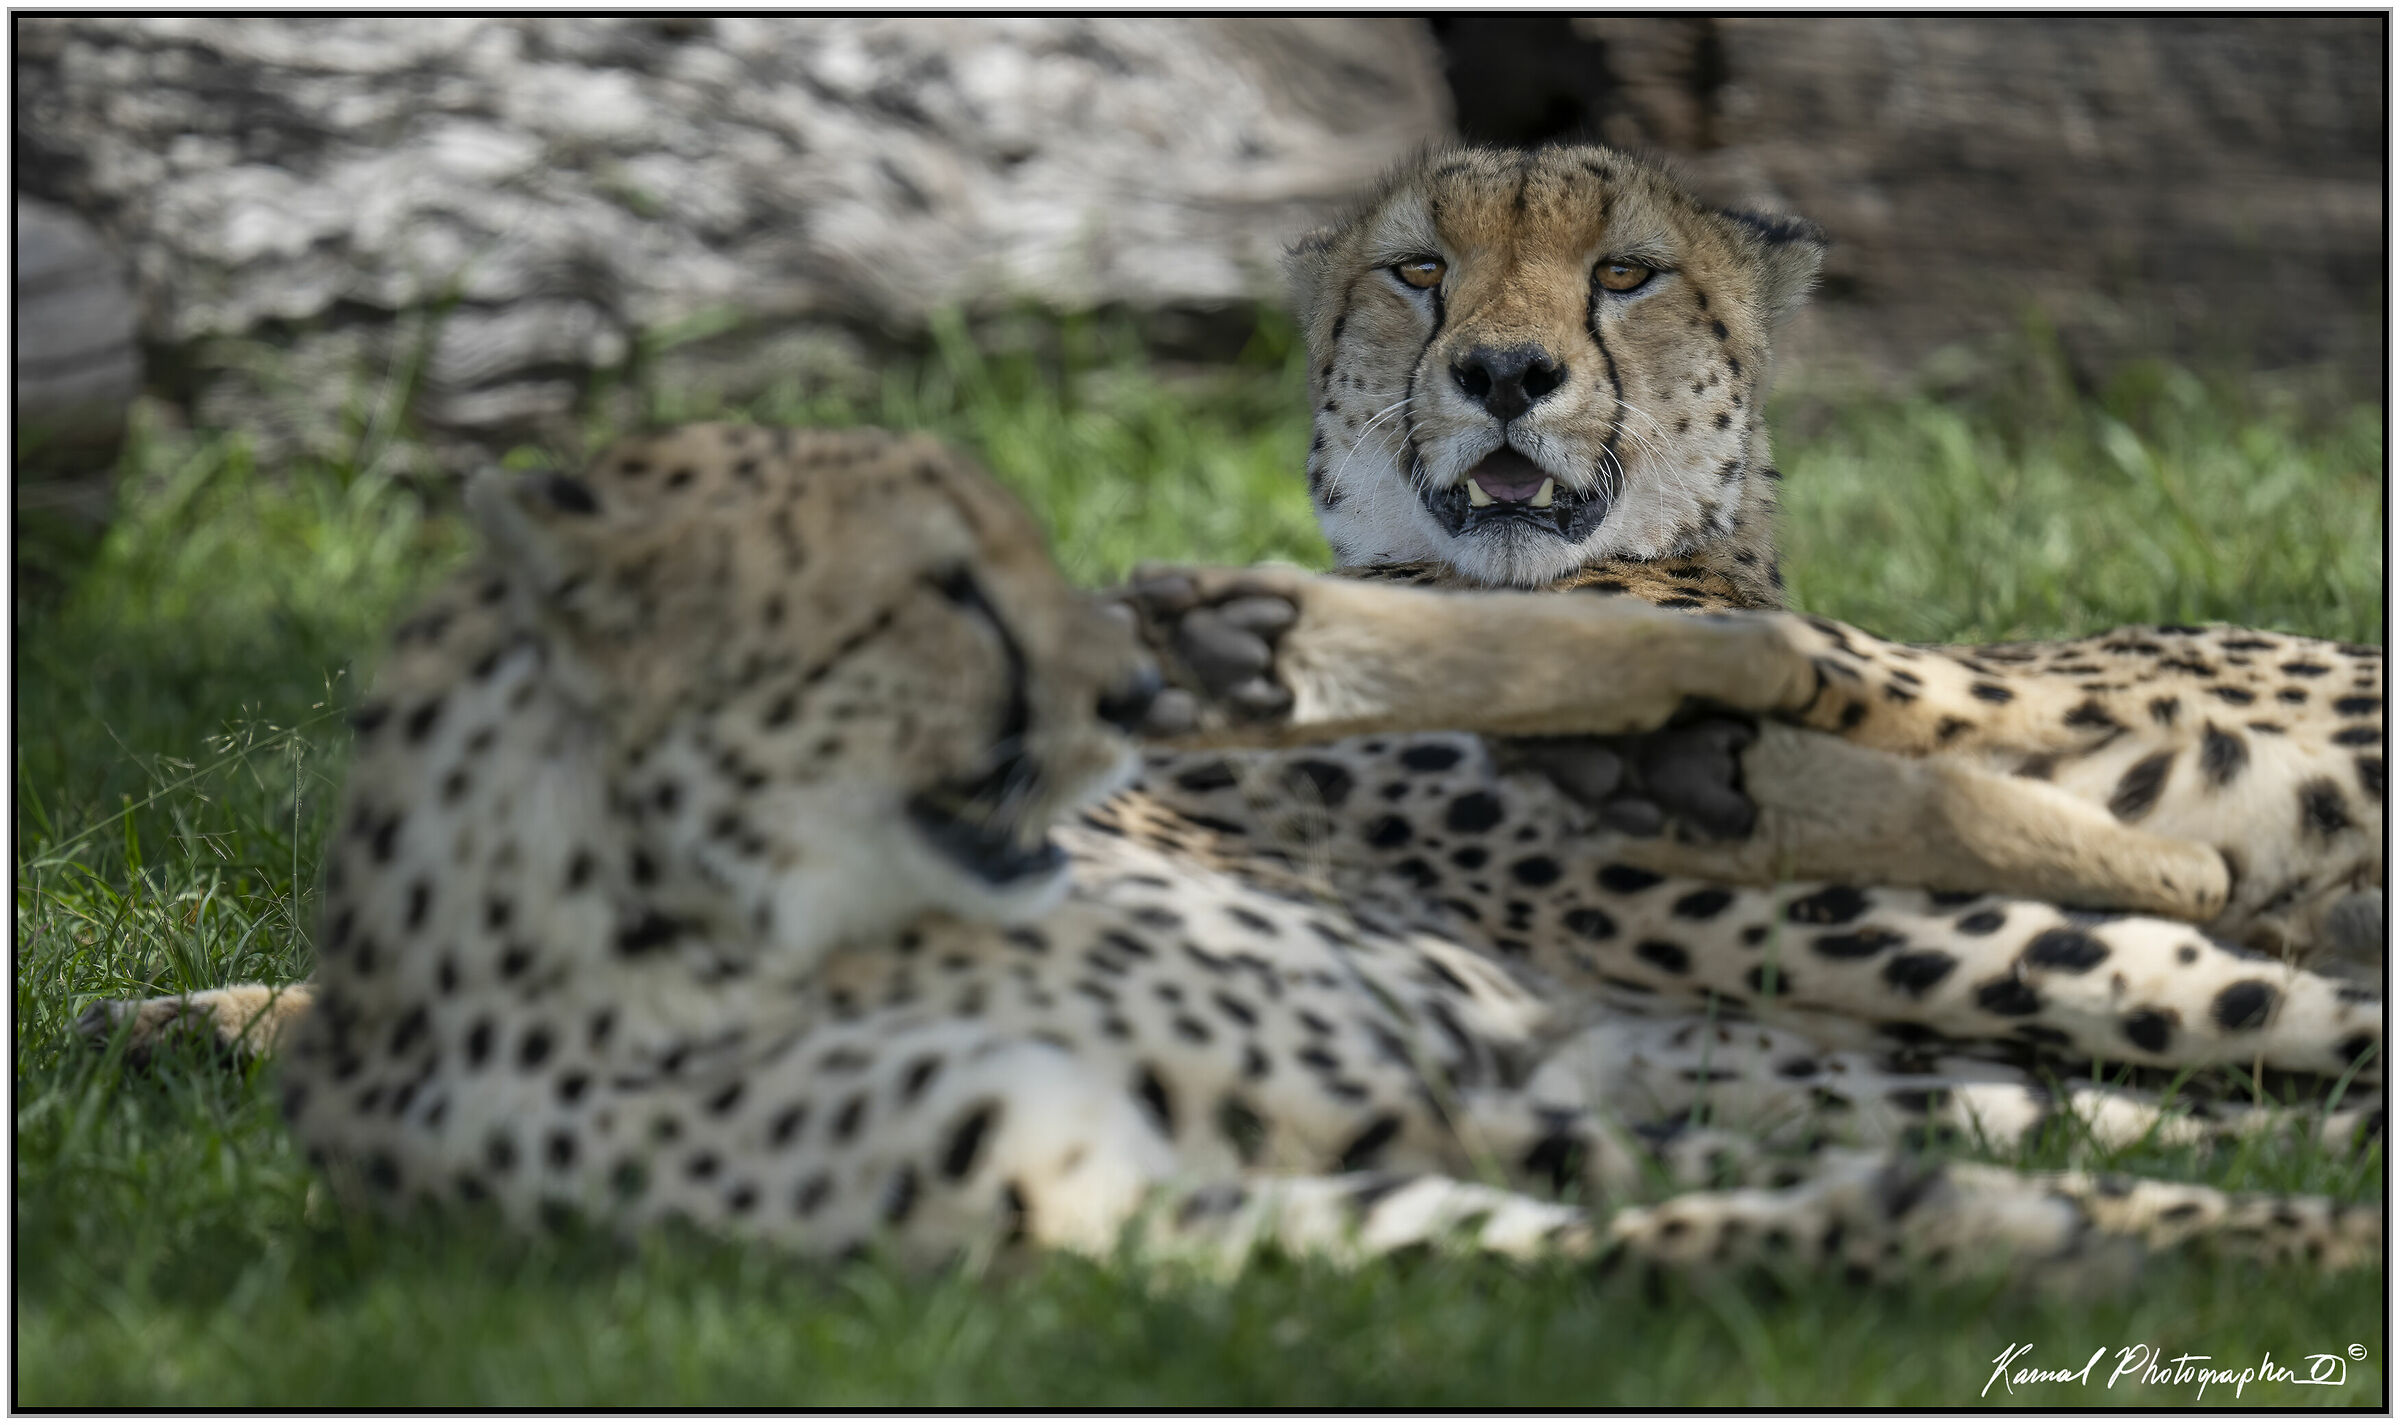 Cheetah (Acinonyx jubatus)...